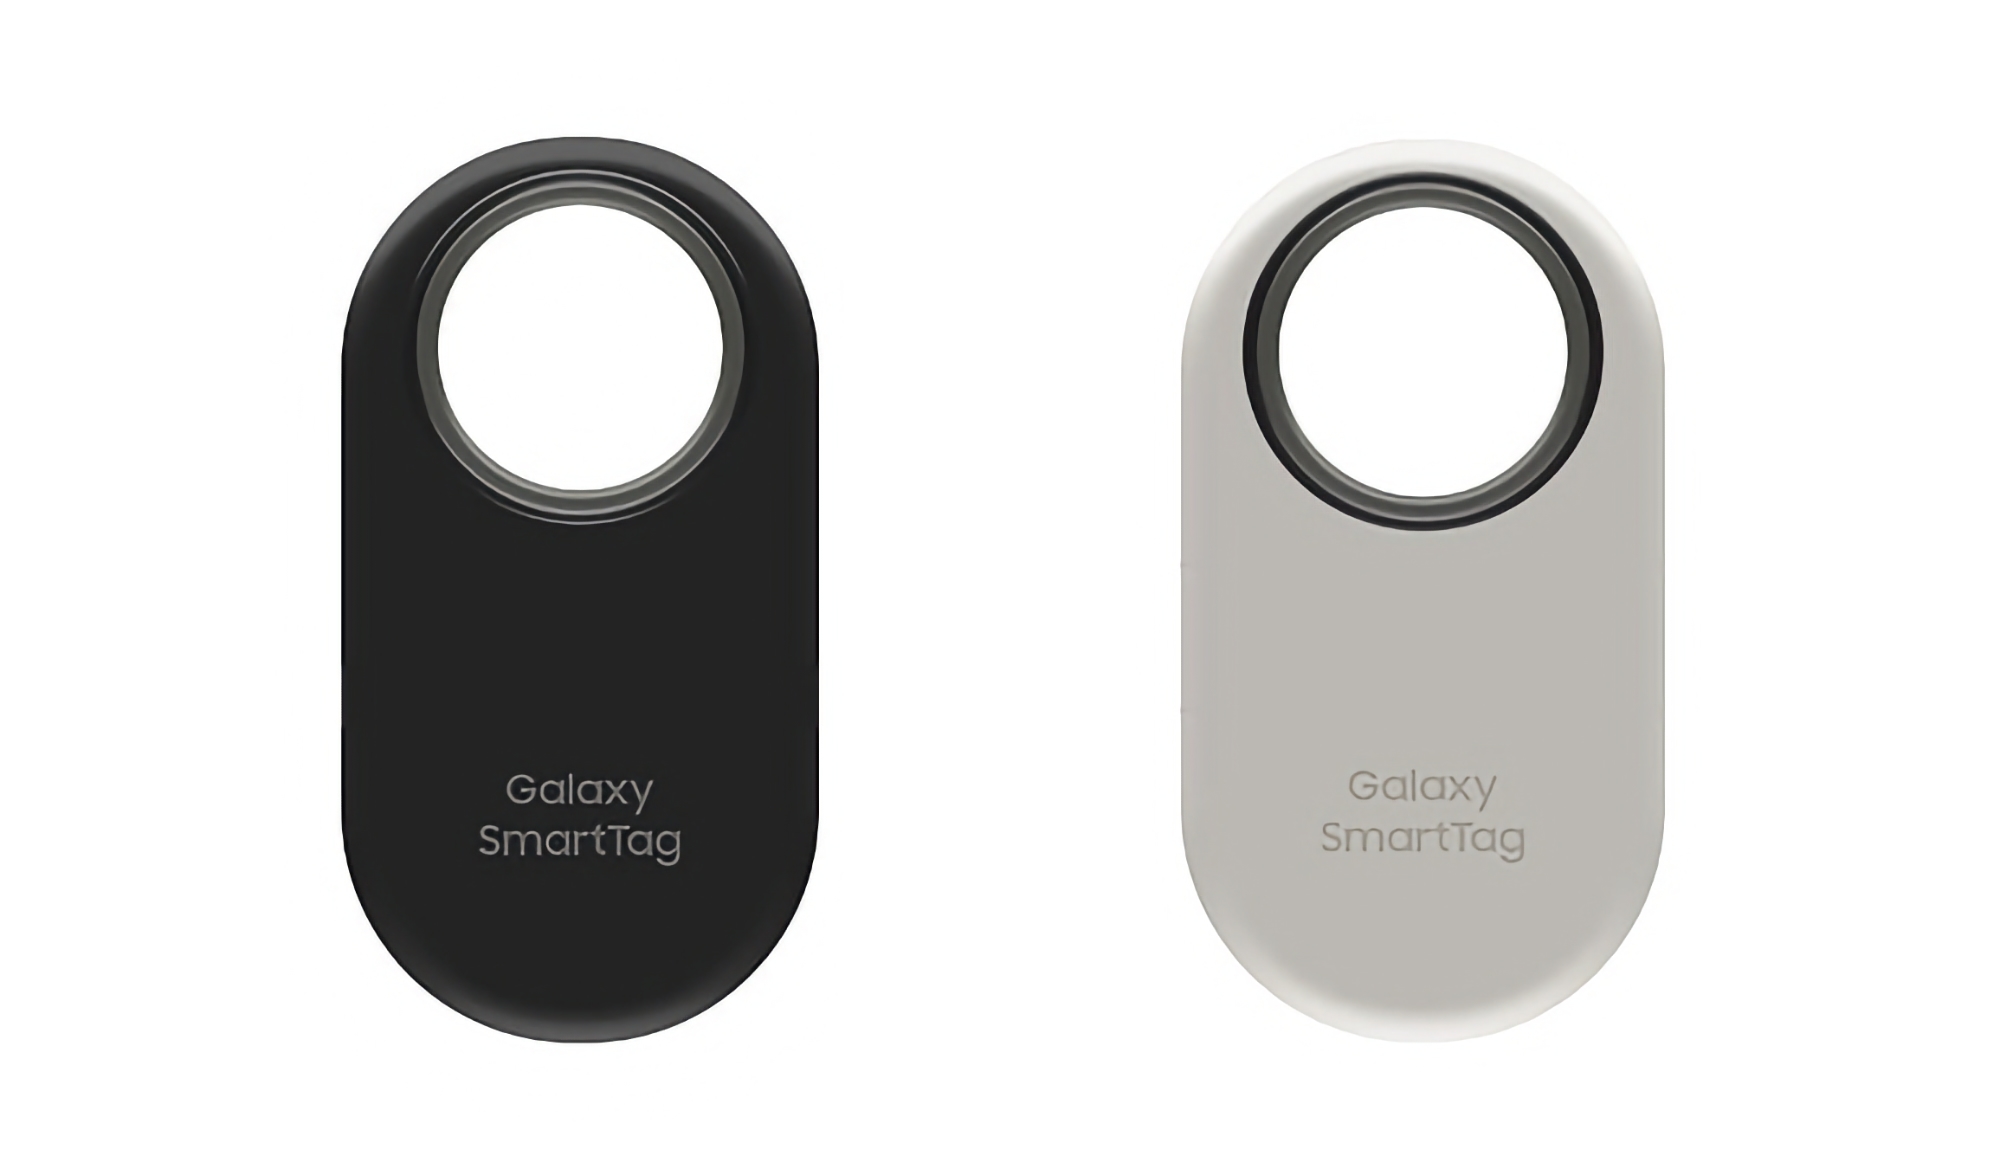 Samsung Galaxy Smart Tag 2 è apparso sui rendering, l'uscita della novità non è molto lontana